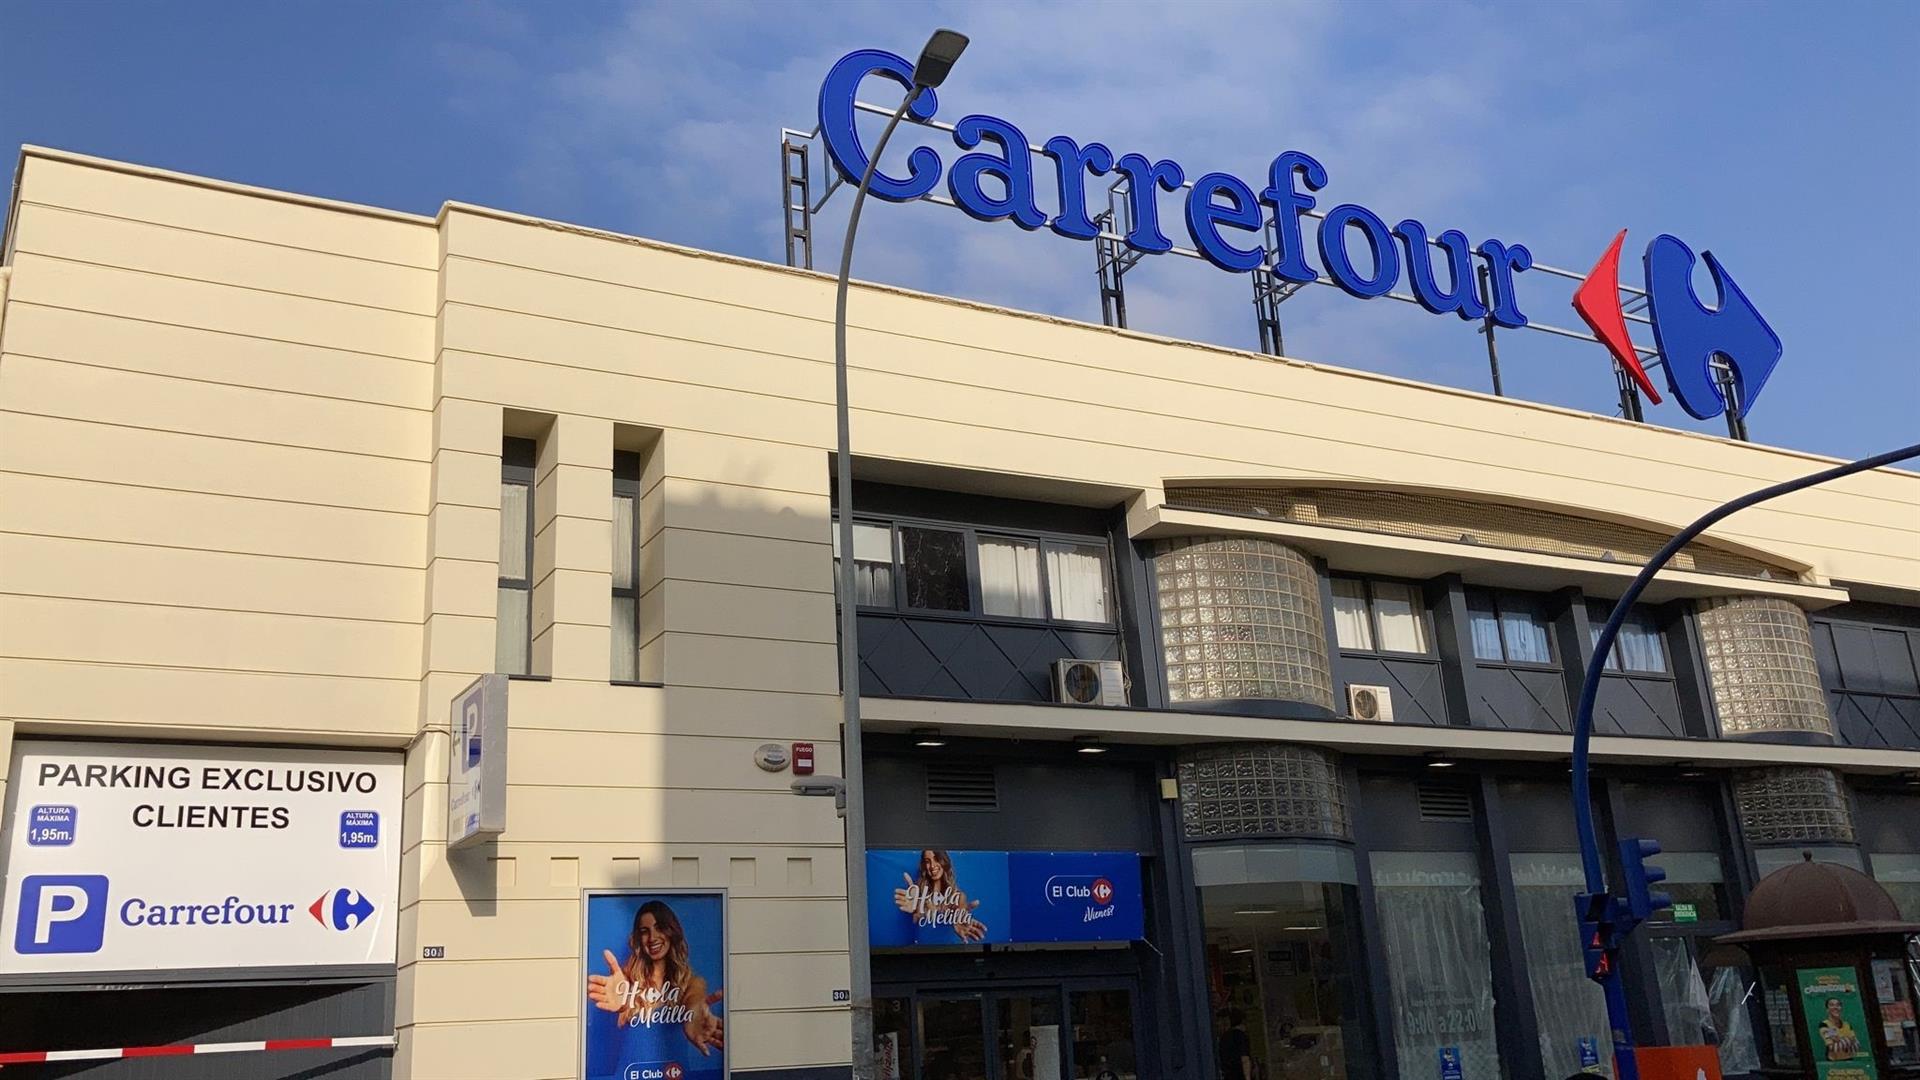 És el sistema de depilació més venut ara a Carrefour perquè té tecnologia antiirritació patentada